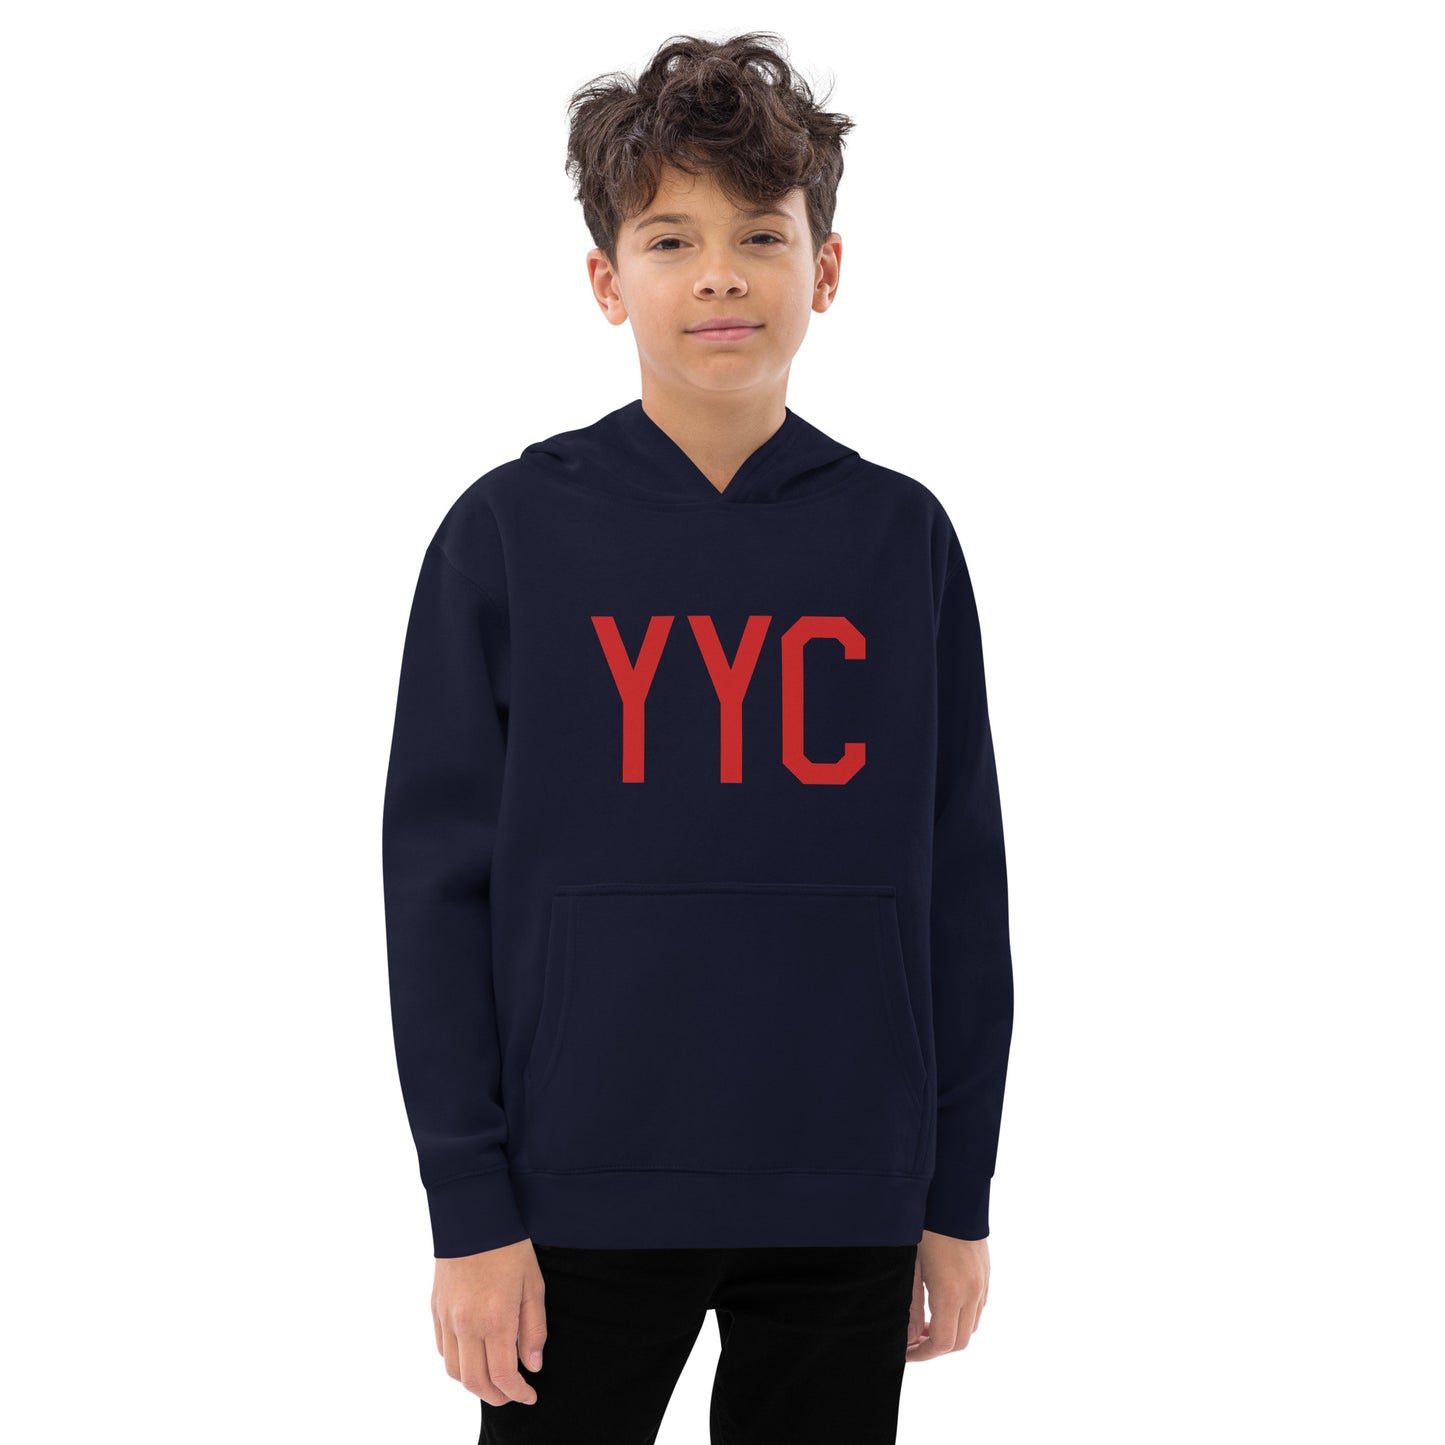 YYC Calgary Alberta Kid's Fleece Hoodie